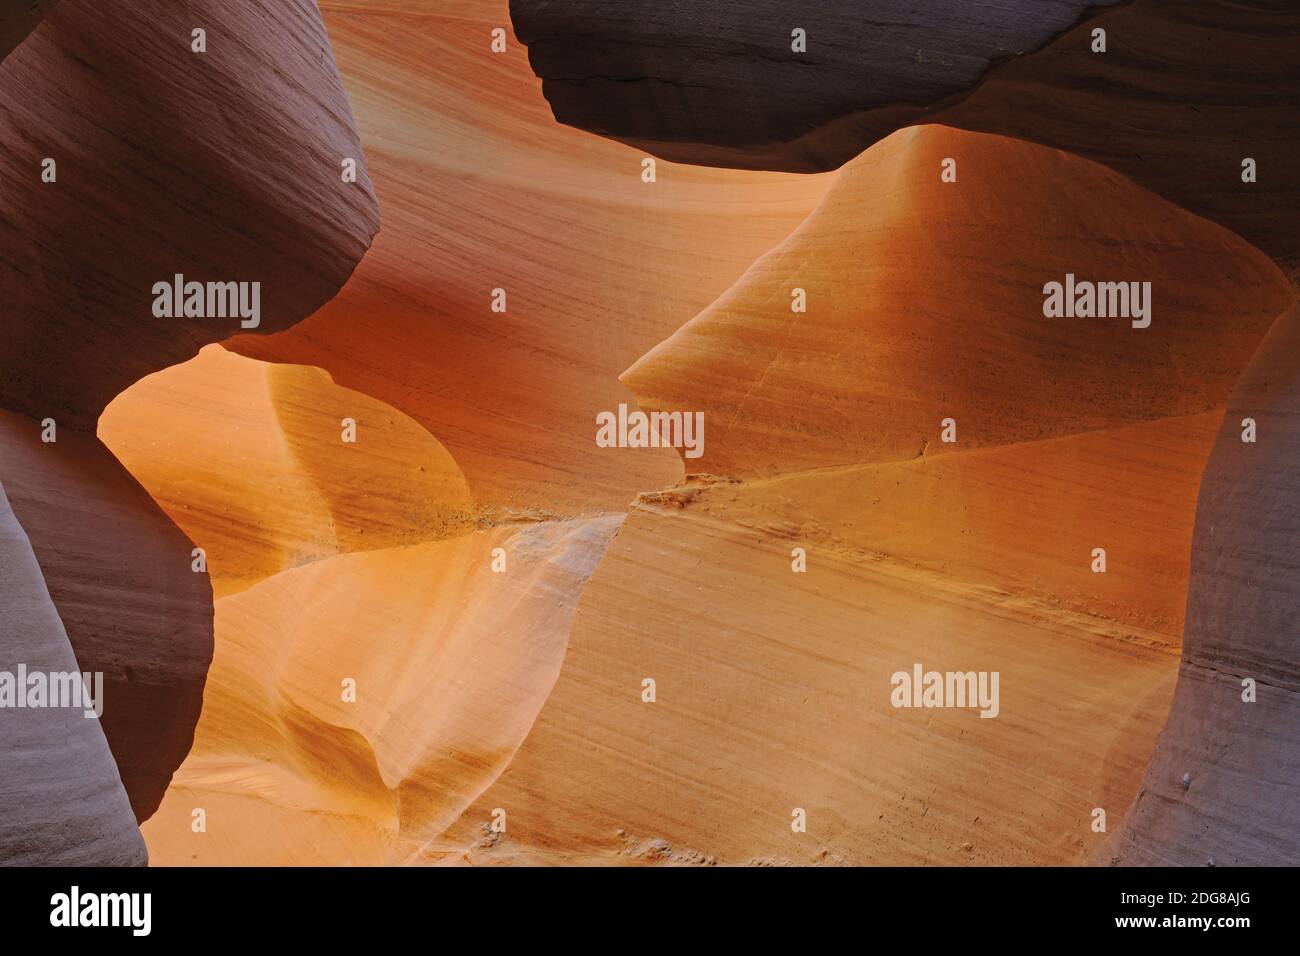 Gesteinsformen, Farben und Strukturen im Antelope Slot Canyon, Arizona, États-Unis Banque D'Images